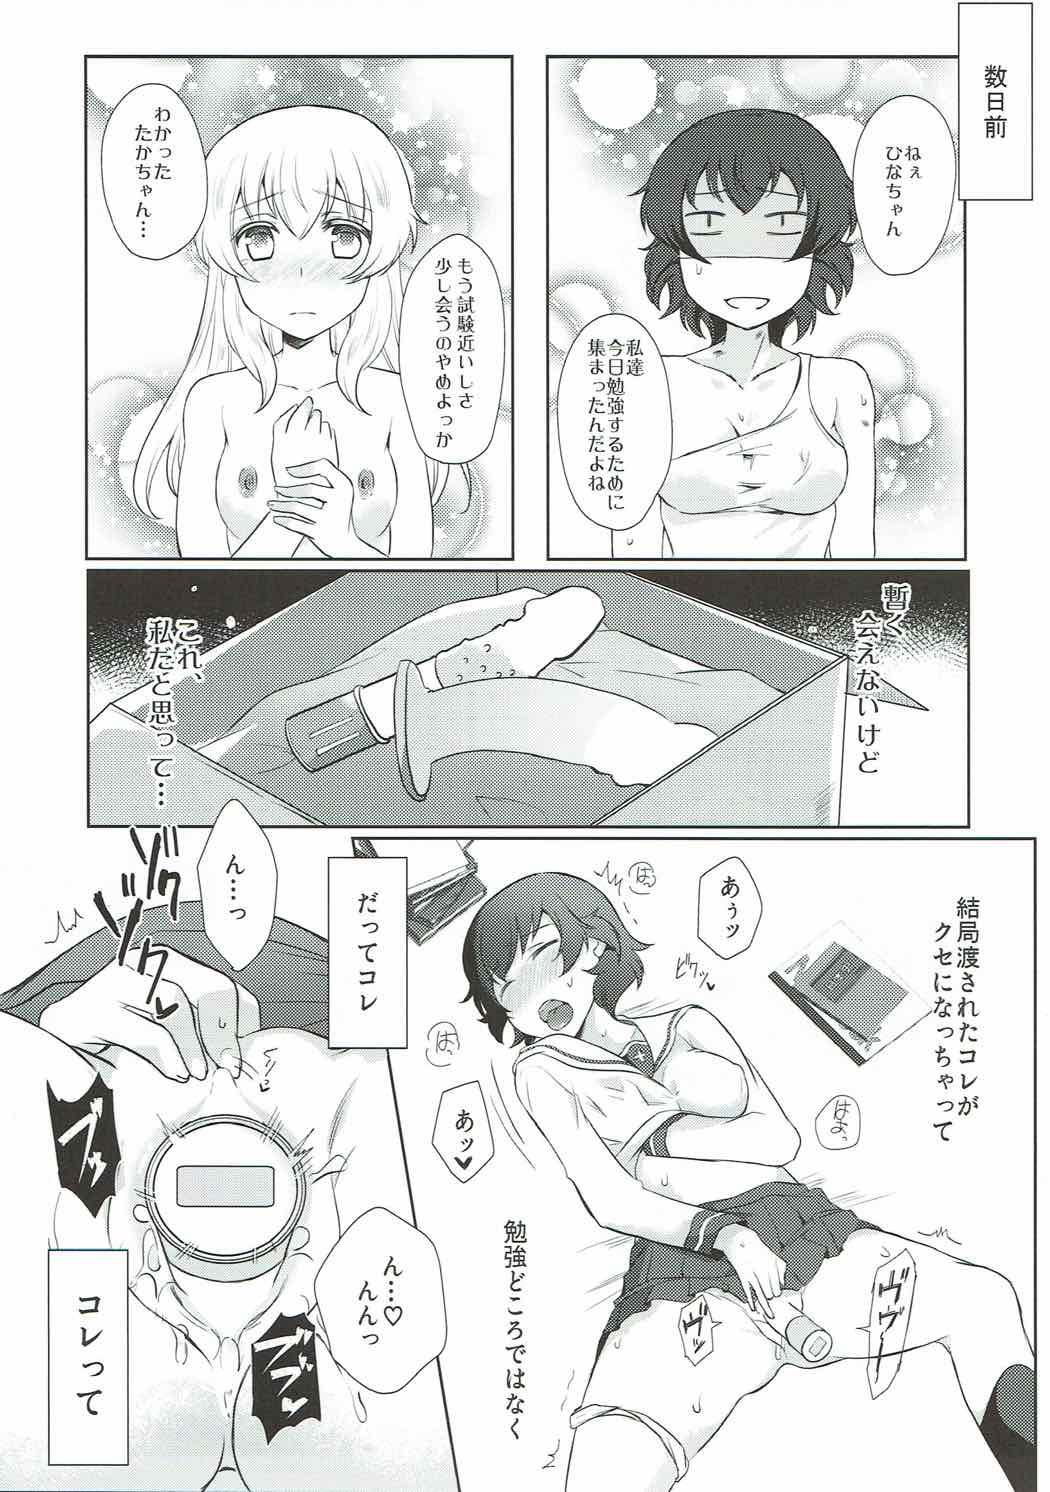 Perfect Teen Dakara Watashi wa Sotsugyou dekinai! - Girls und panzer Dick Sucking Porn - Page 4